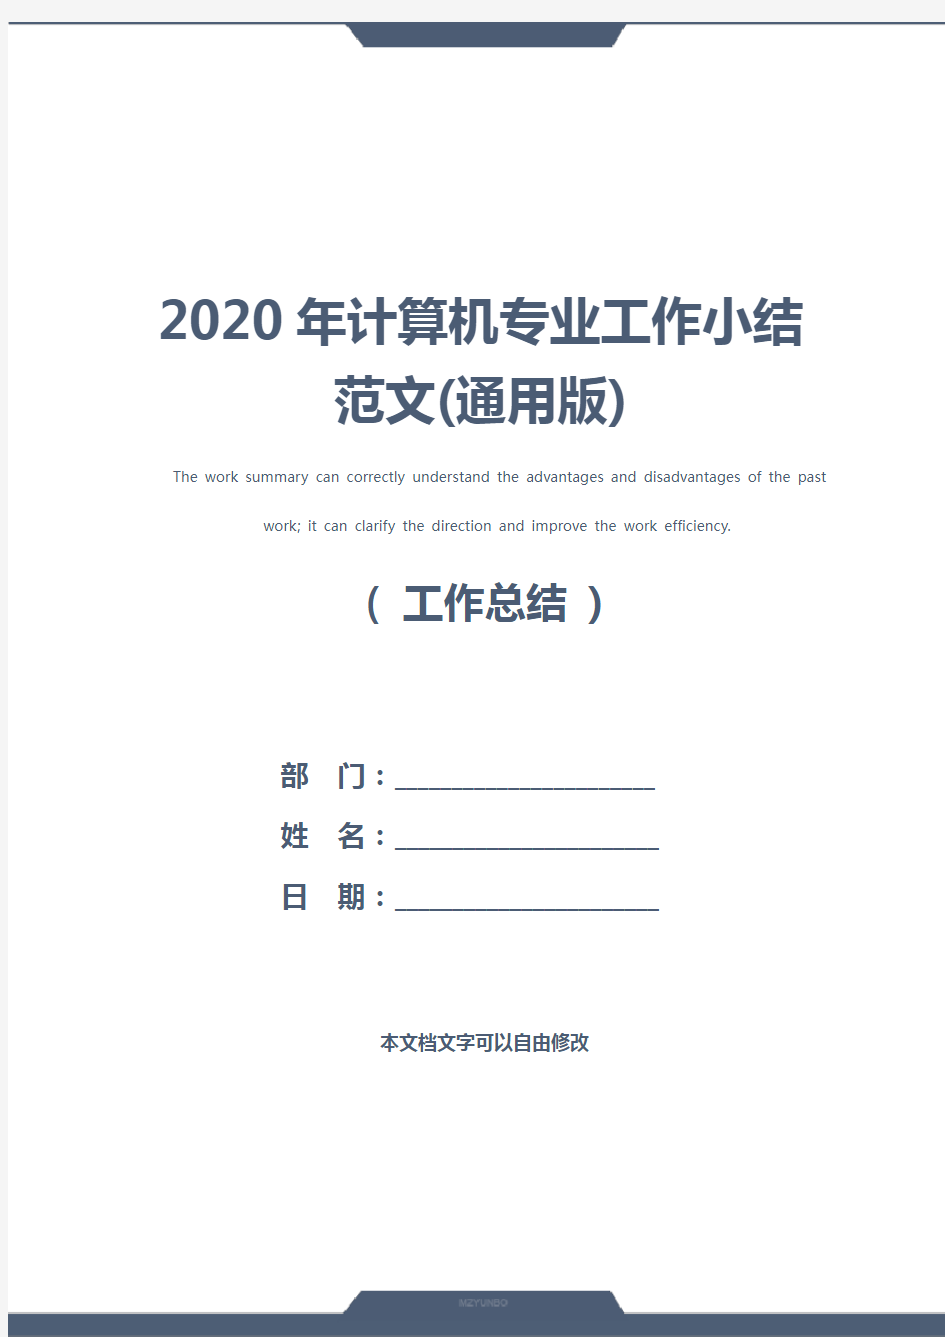 2020年计算机专业工作小结范文(通用版)